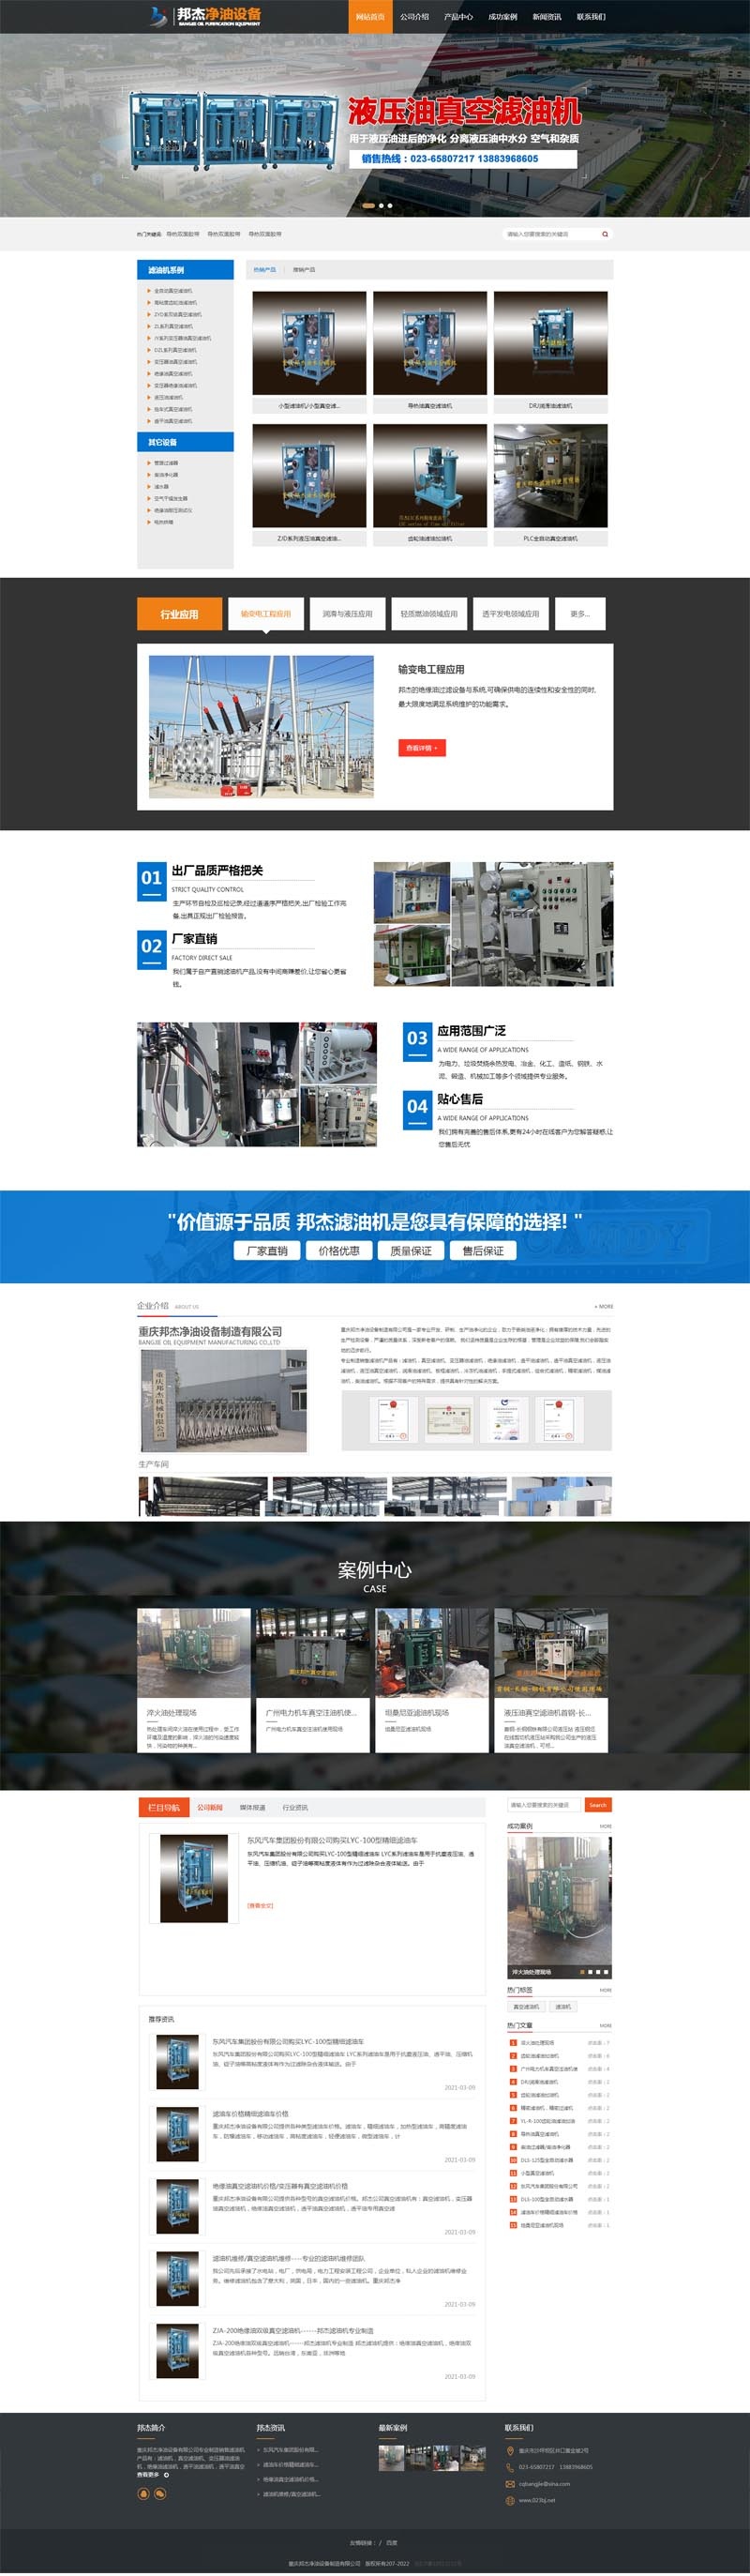 重庆邦杰设备公司,营销型网站案例 